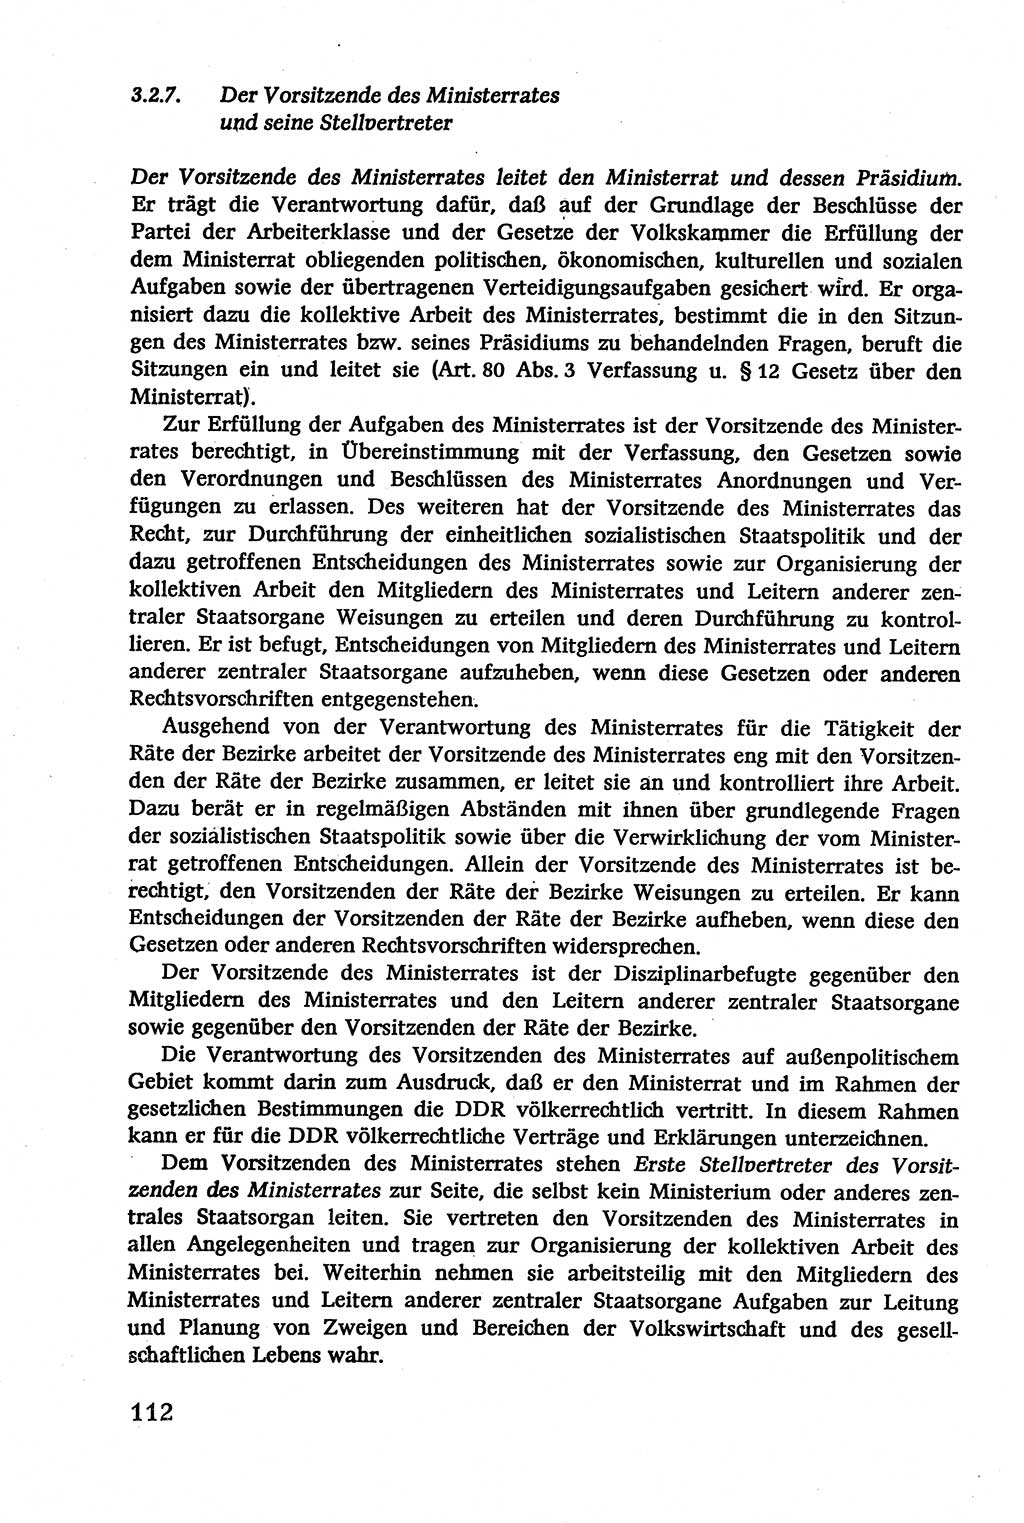 Verwaltungsrecht [Deutsche Demokratische Republik (DDR)], Lehrbuch 1979, Seite 112 (Verw.-R. DDR Lb. 1979, S. 112)